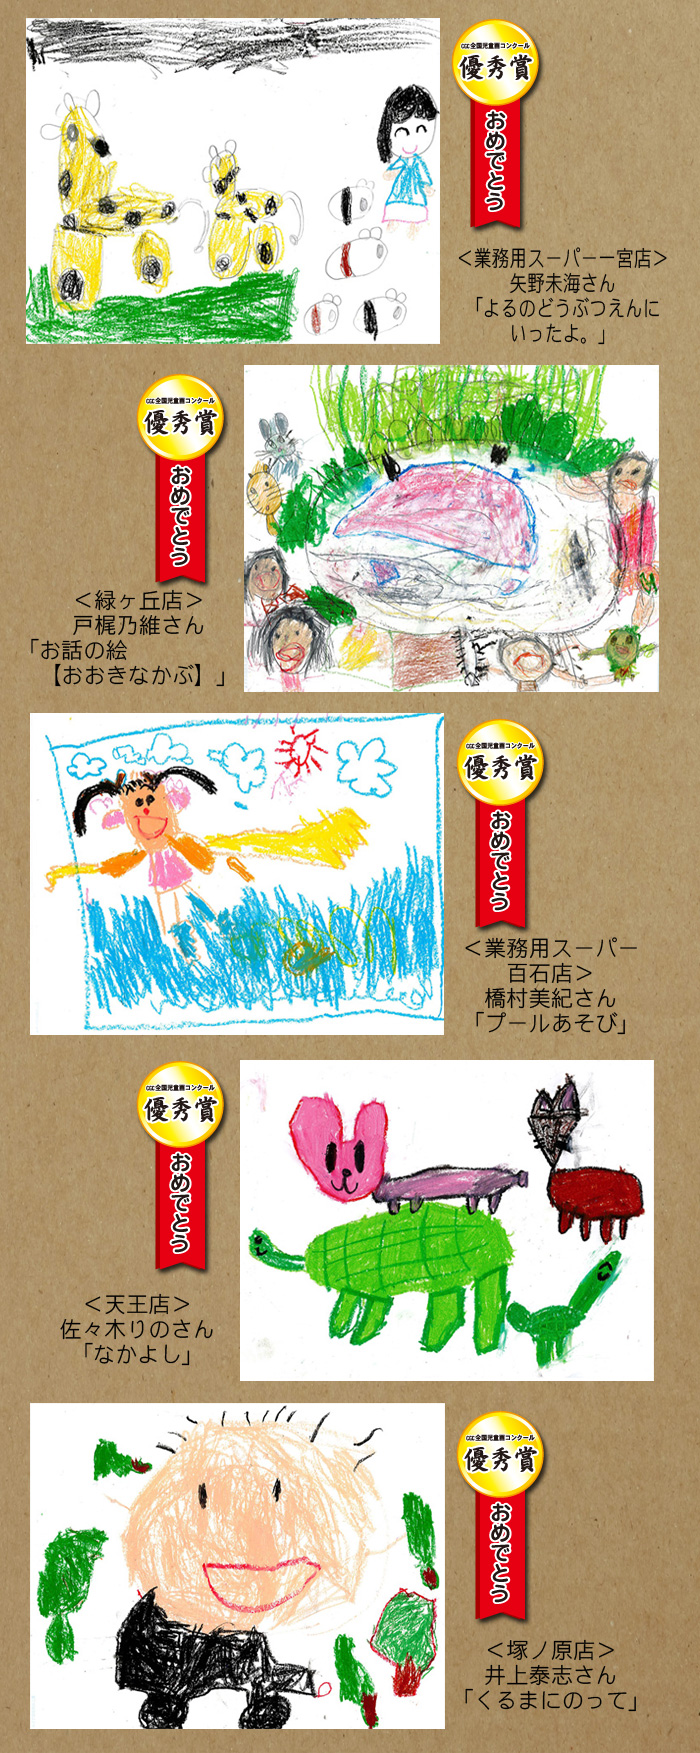 全国児童画コンクール 第30回入賞作品 株式会社サンプラザ ホームページ